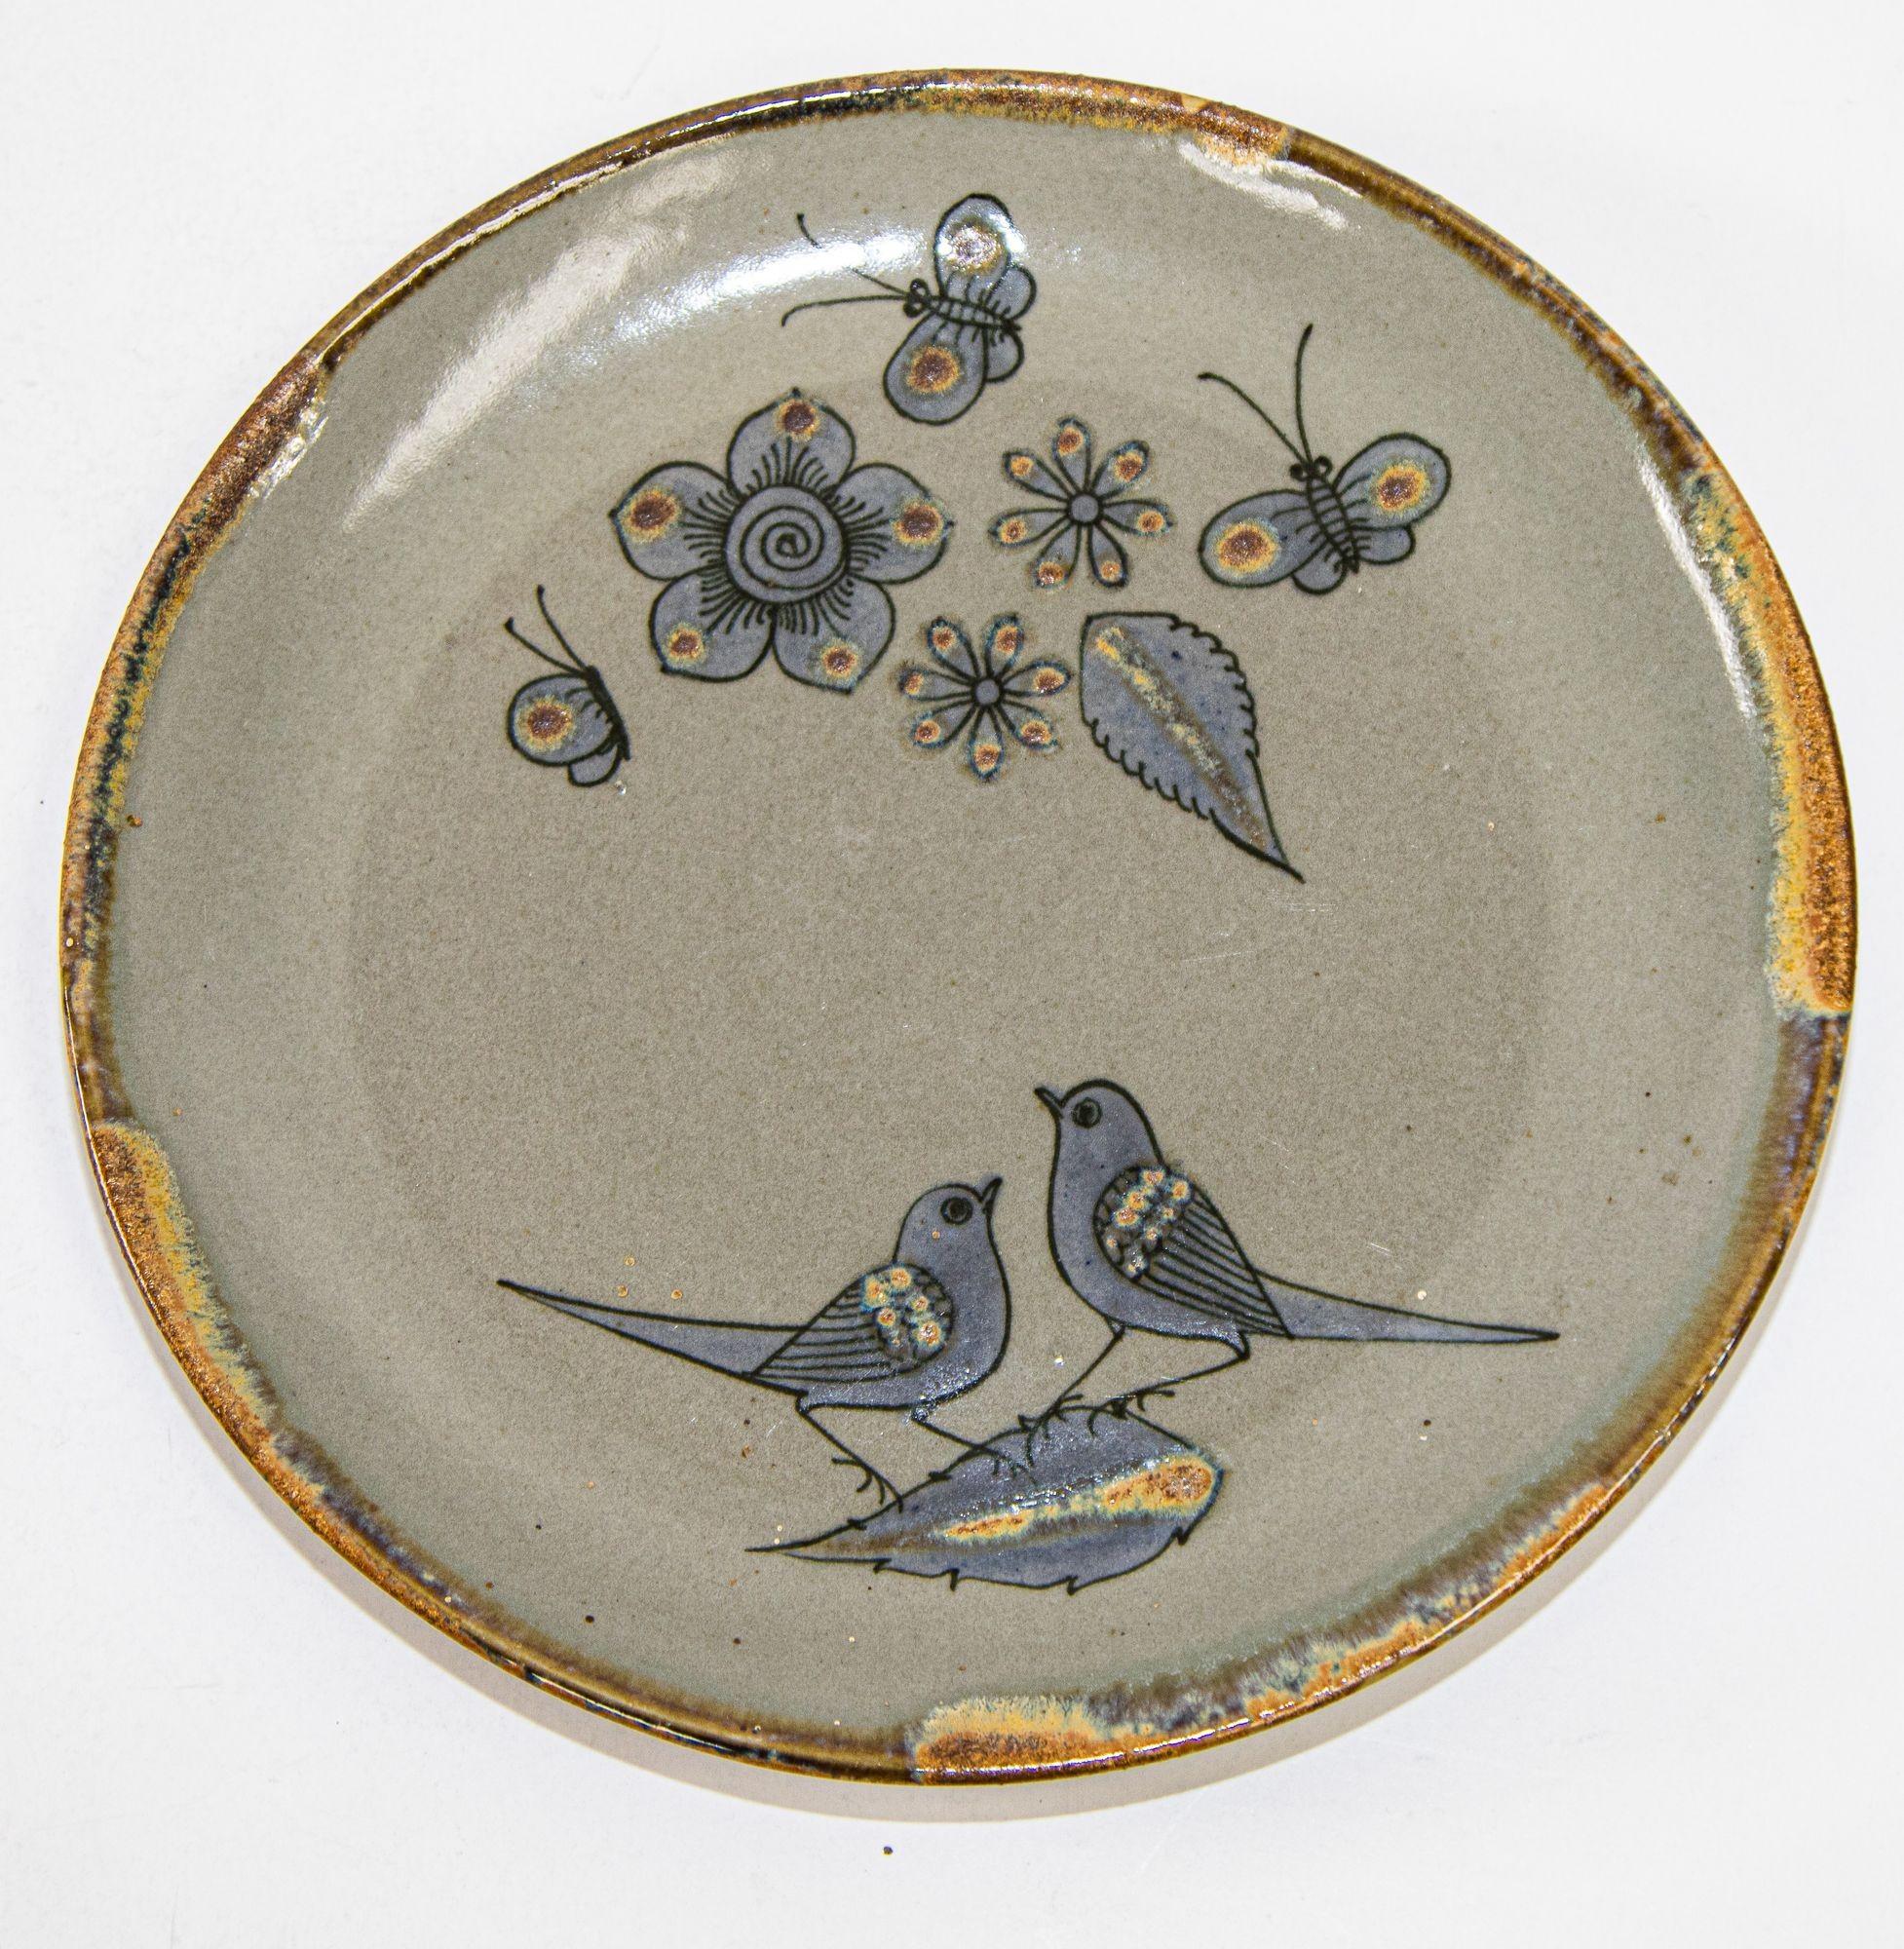 Assiette en céramique Ken Edwards fabriquée à la main Tonala Mexico Folk Art Pottery.
Vintage Ken Edwards : oiseaux et fleurs en céramique mexicaine de Tonala Pottery.
Magnifique poterie d'art mexicaine TONALA, fabriquée et peinte à la